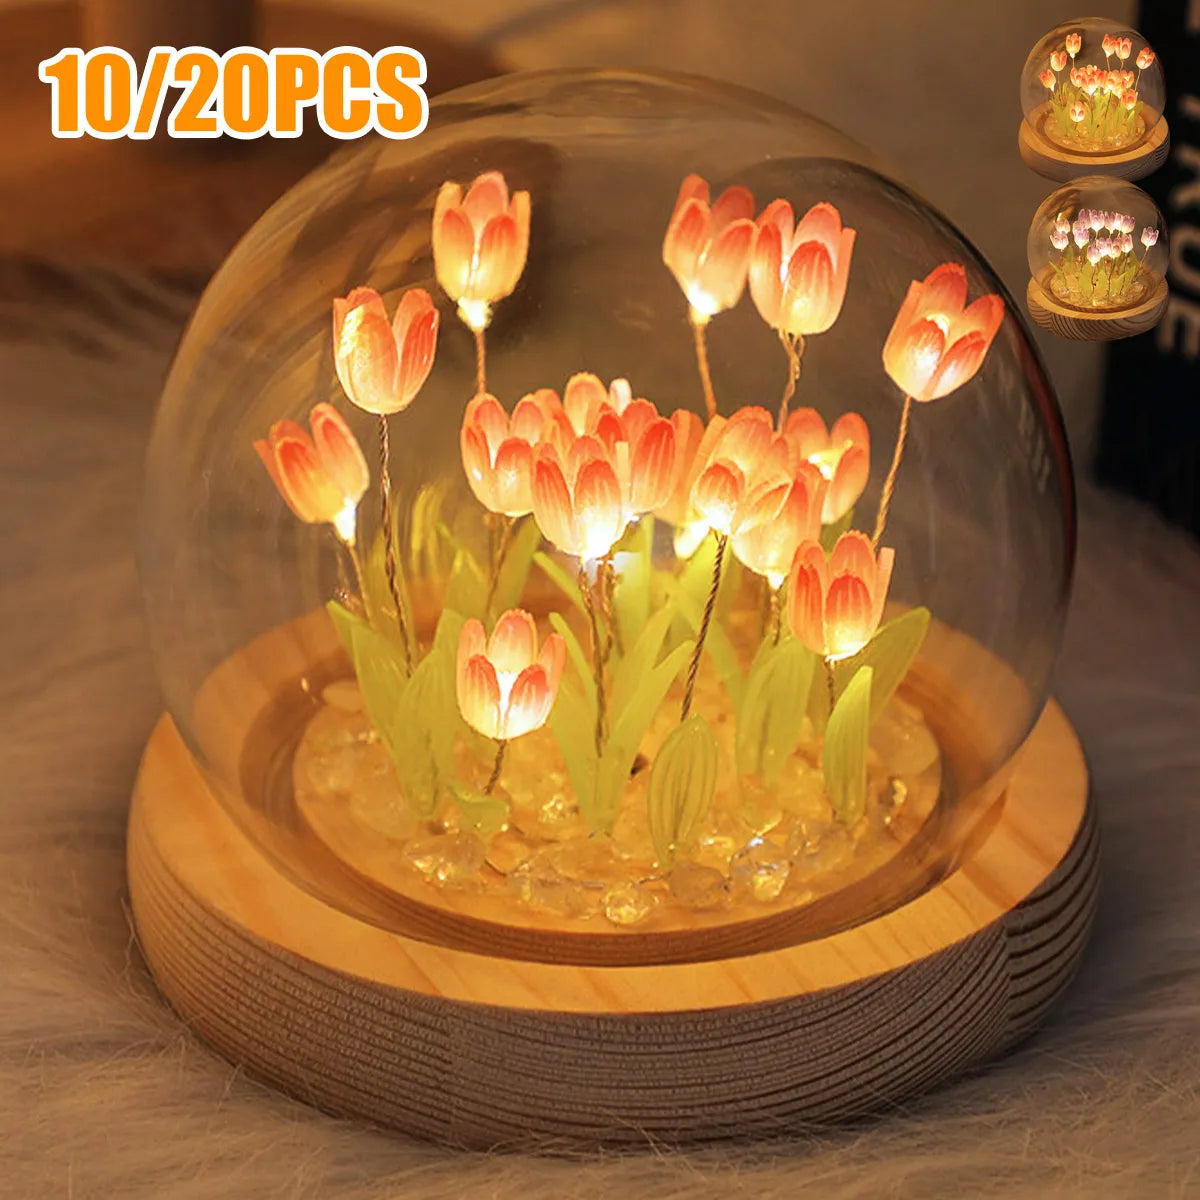 10/20pcs Tulpe Nachtlicht batteriebetriebener Tulpenblüte Tischlampe DIY Simulation Tulp LED Nachtlicht handgefertigtes Nachtleuchten